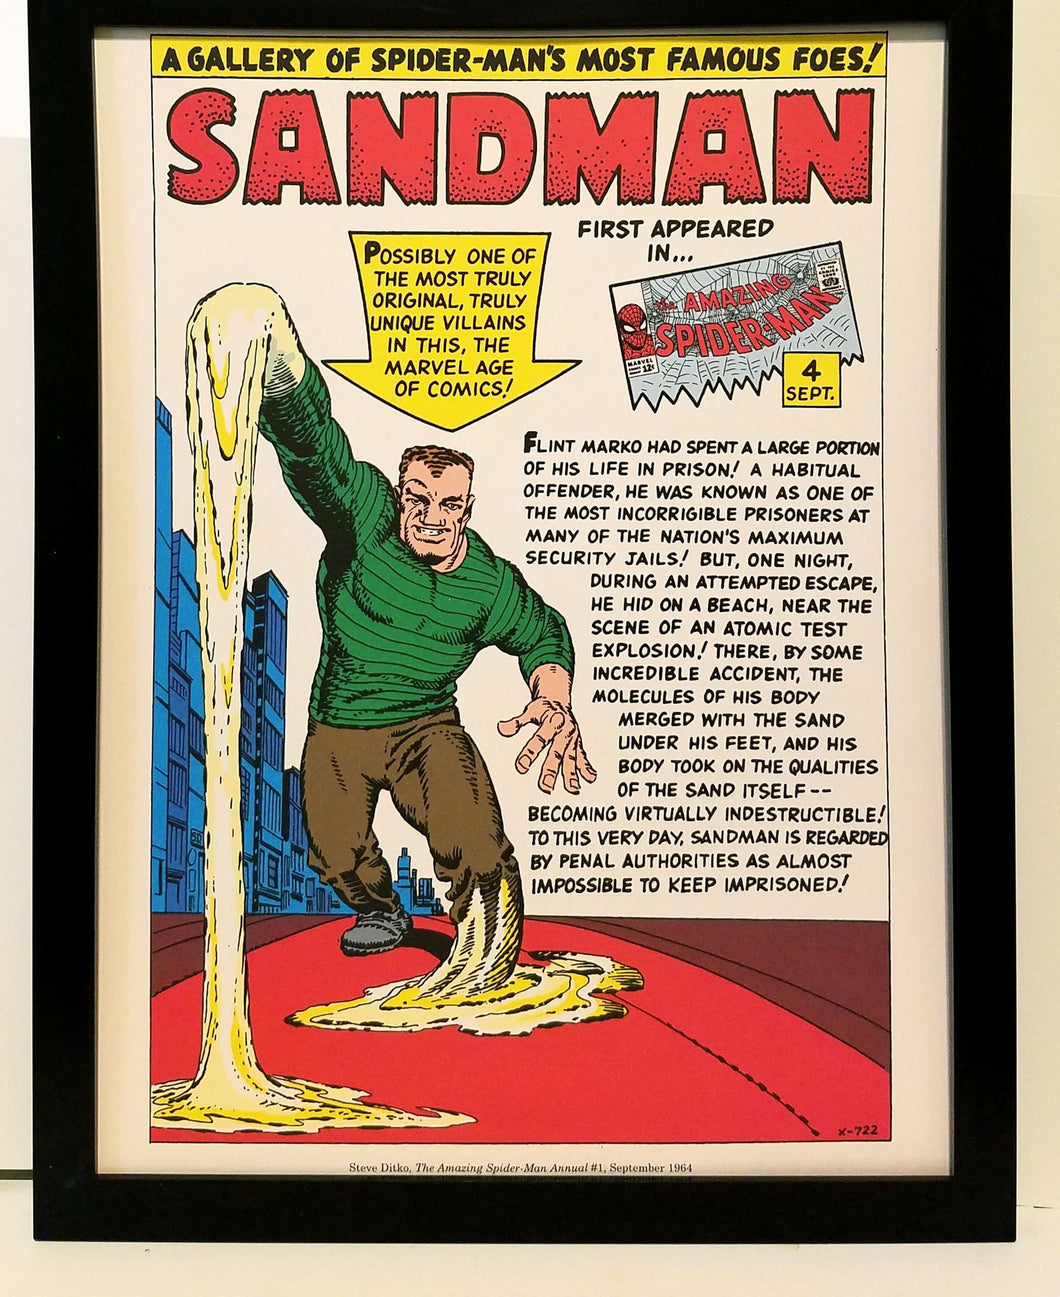 Spider-Man Sandman by Steve Ditko 9x12 FRAMED Marvel Comics Vintage Art Print Poster